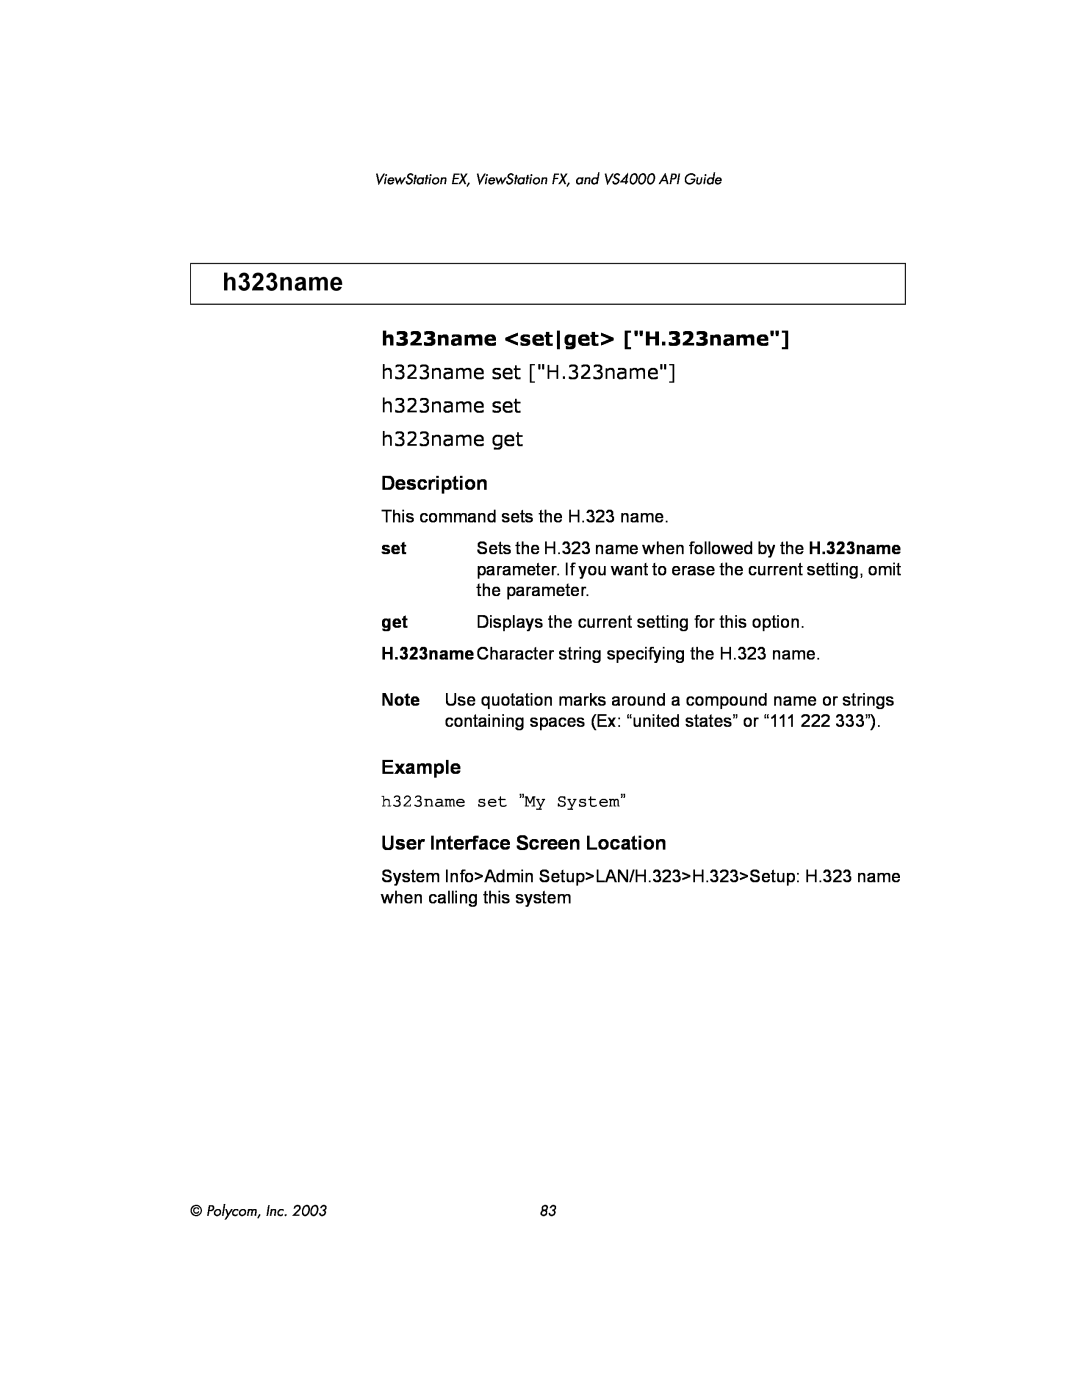 Polycom VIEWSTATION EX manual h323name <set|get> H.323name, h323name get, Description, Example 